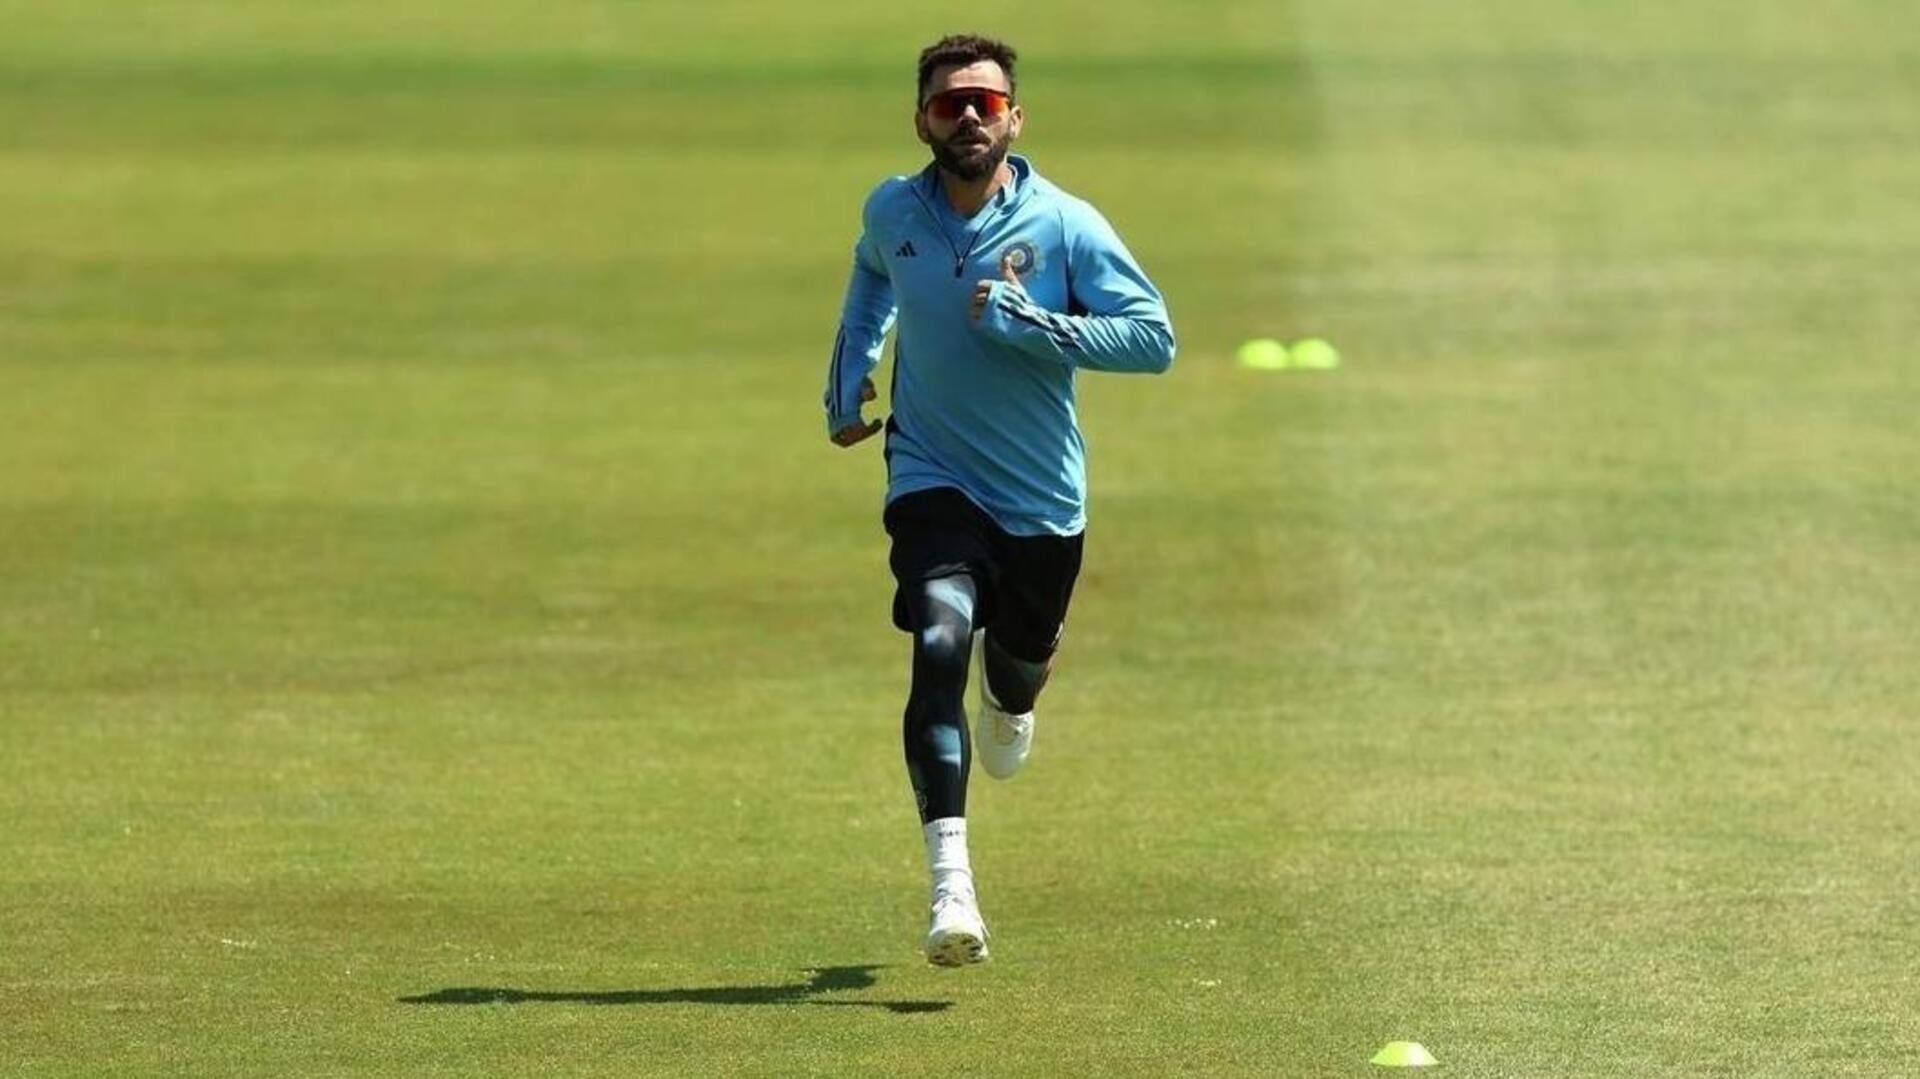 विराट कोहली का टी-20 क्रिकेट में रहा है बोलबाला, आंकड़े जानकर रह जाएंगे हैरान